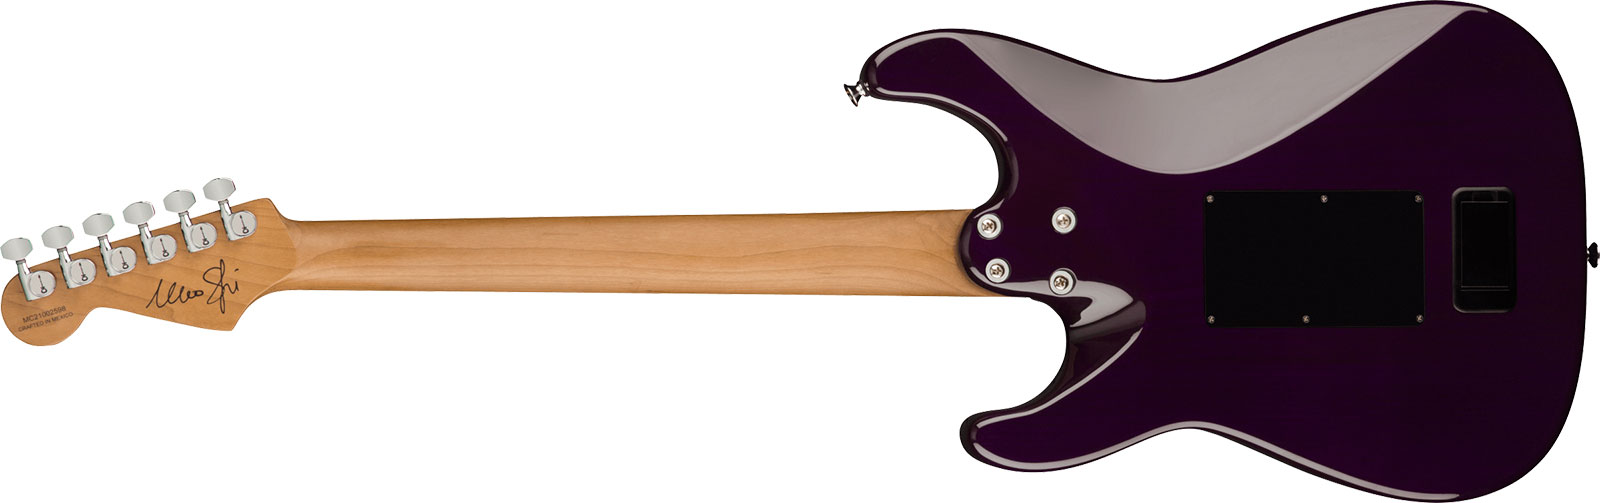 Charvel Marco Sfogli So Cal Style 1 Pro Mod Signature Hss Emg Fr Mn - Transparent Purple Burst - Guitare Électrique Signature - Variation 1